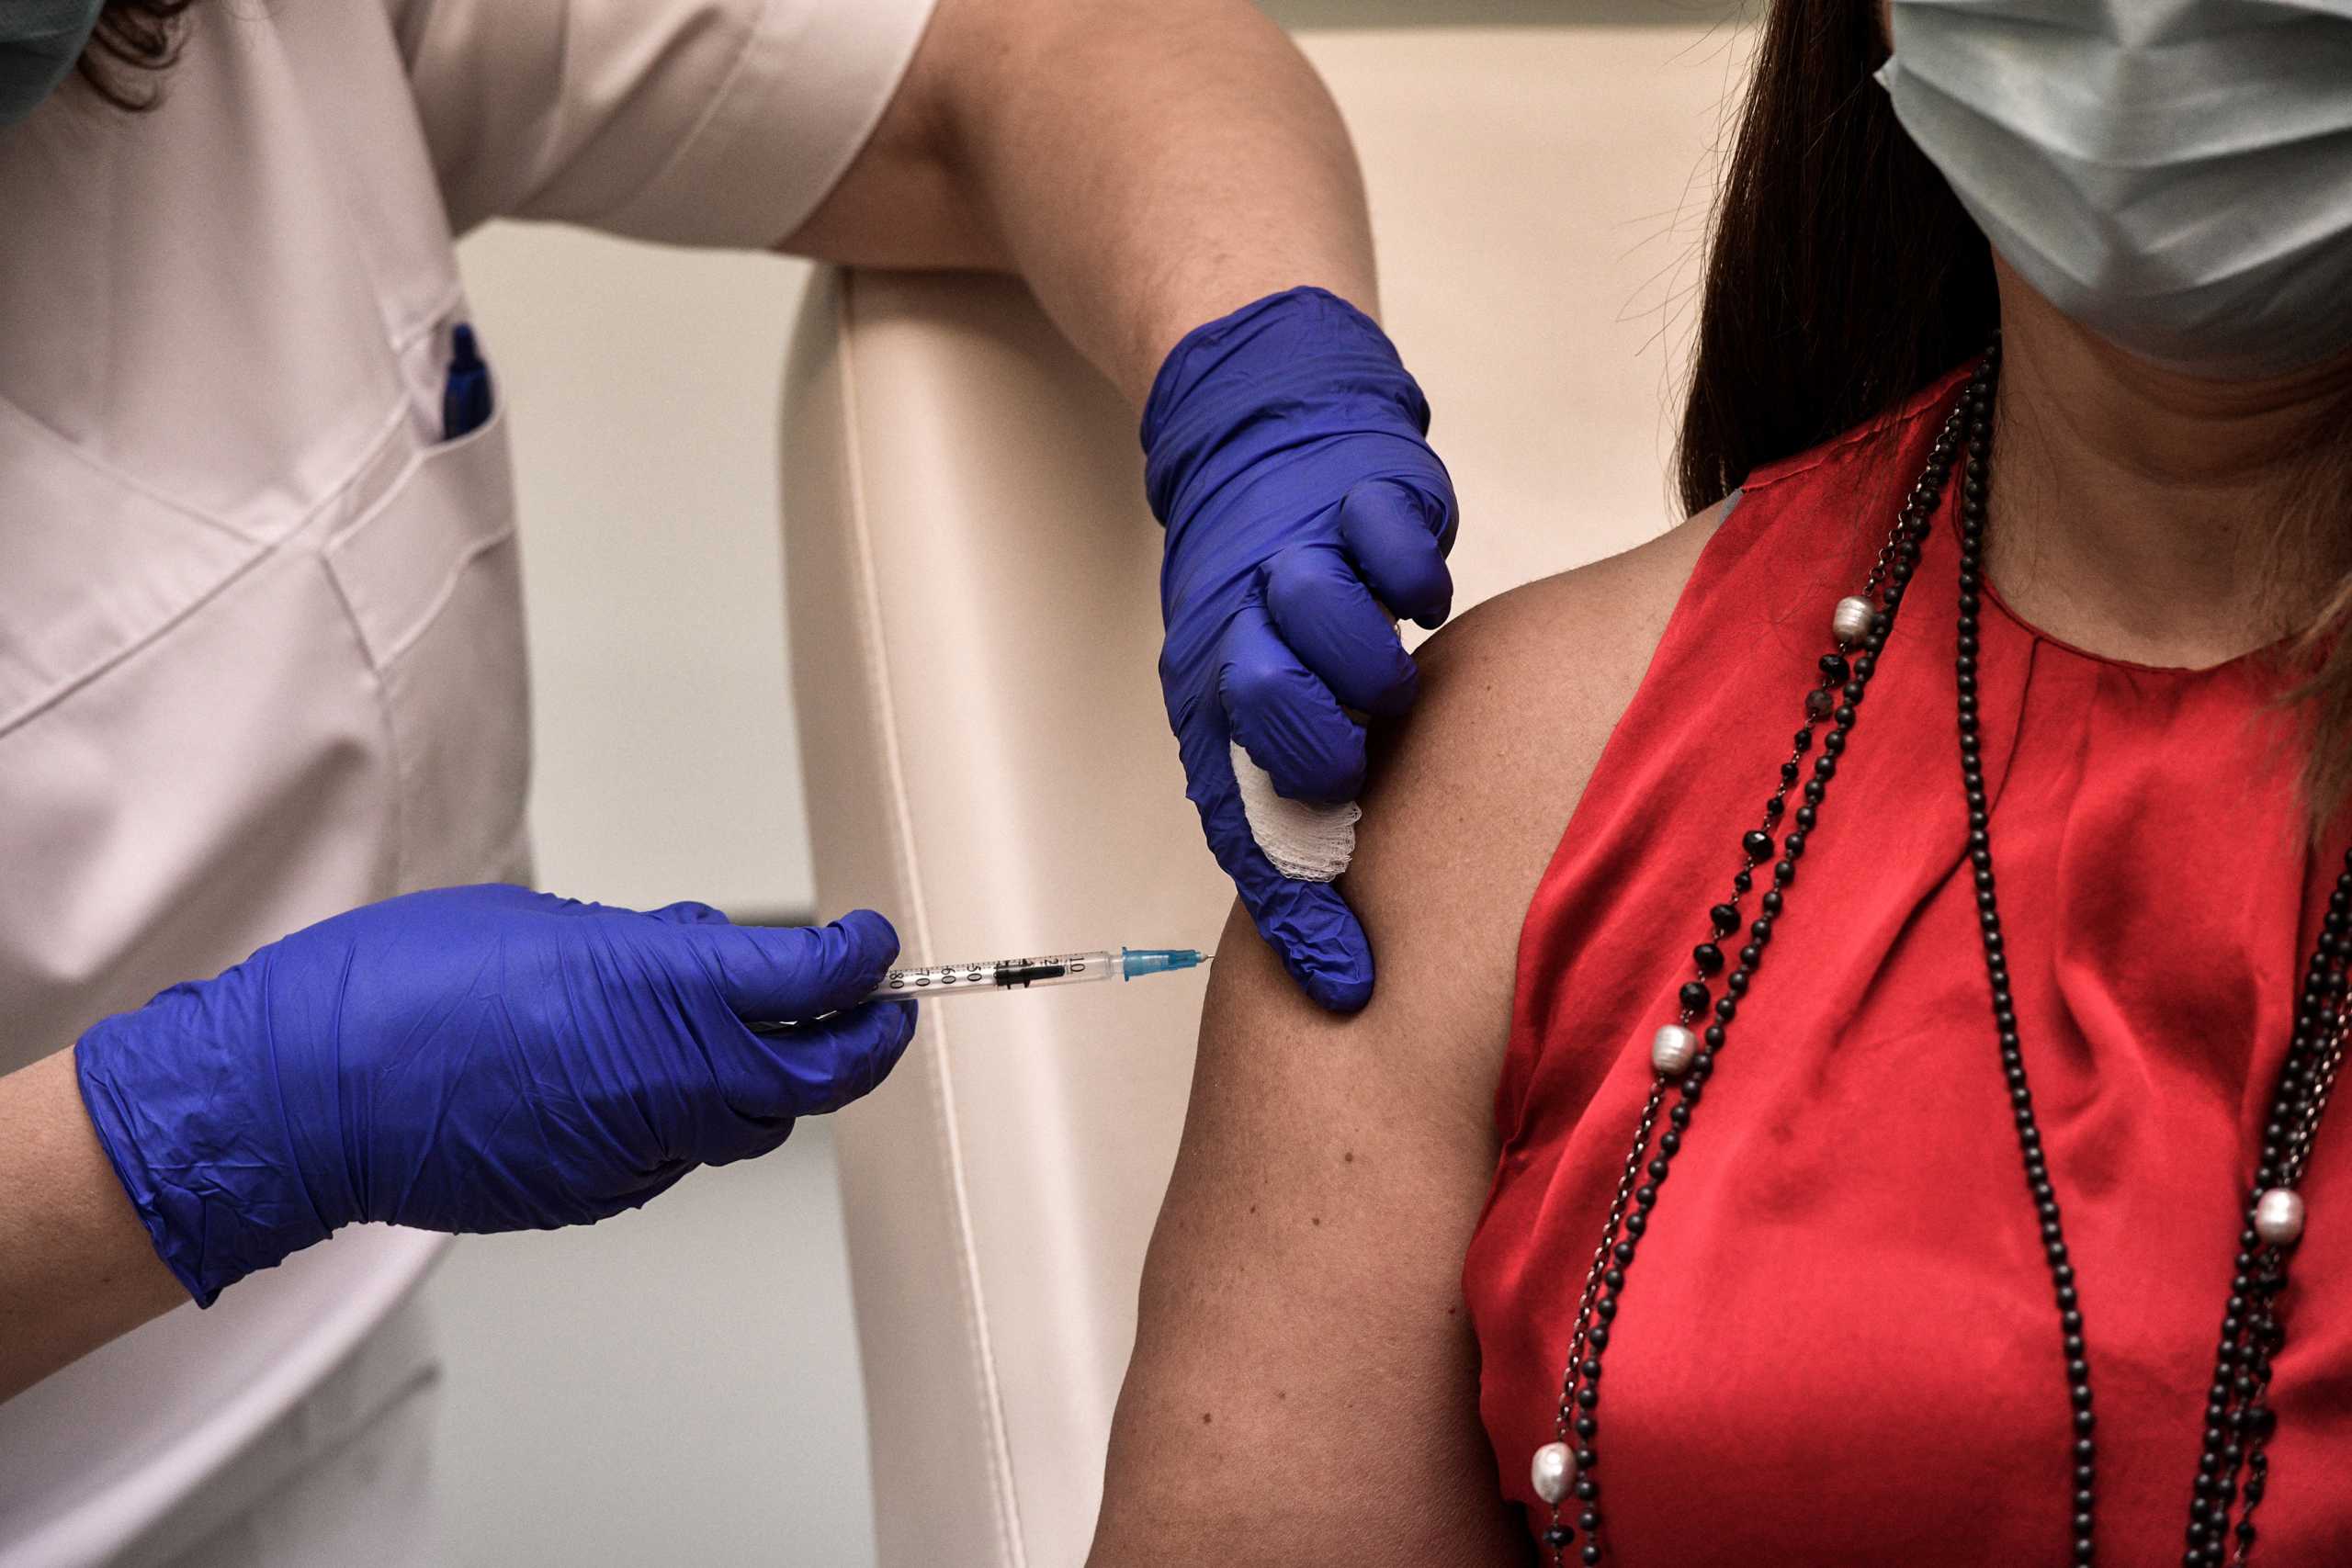 Ηράκλειο: Σε αργία τέθηκε υπεύθυνη εμβολιαστικού κέντρου – Ομολόγησε τον ψευδή εμβολιασμό της